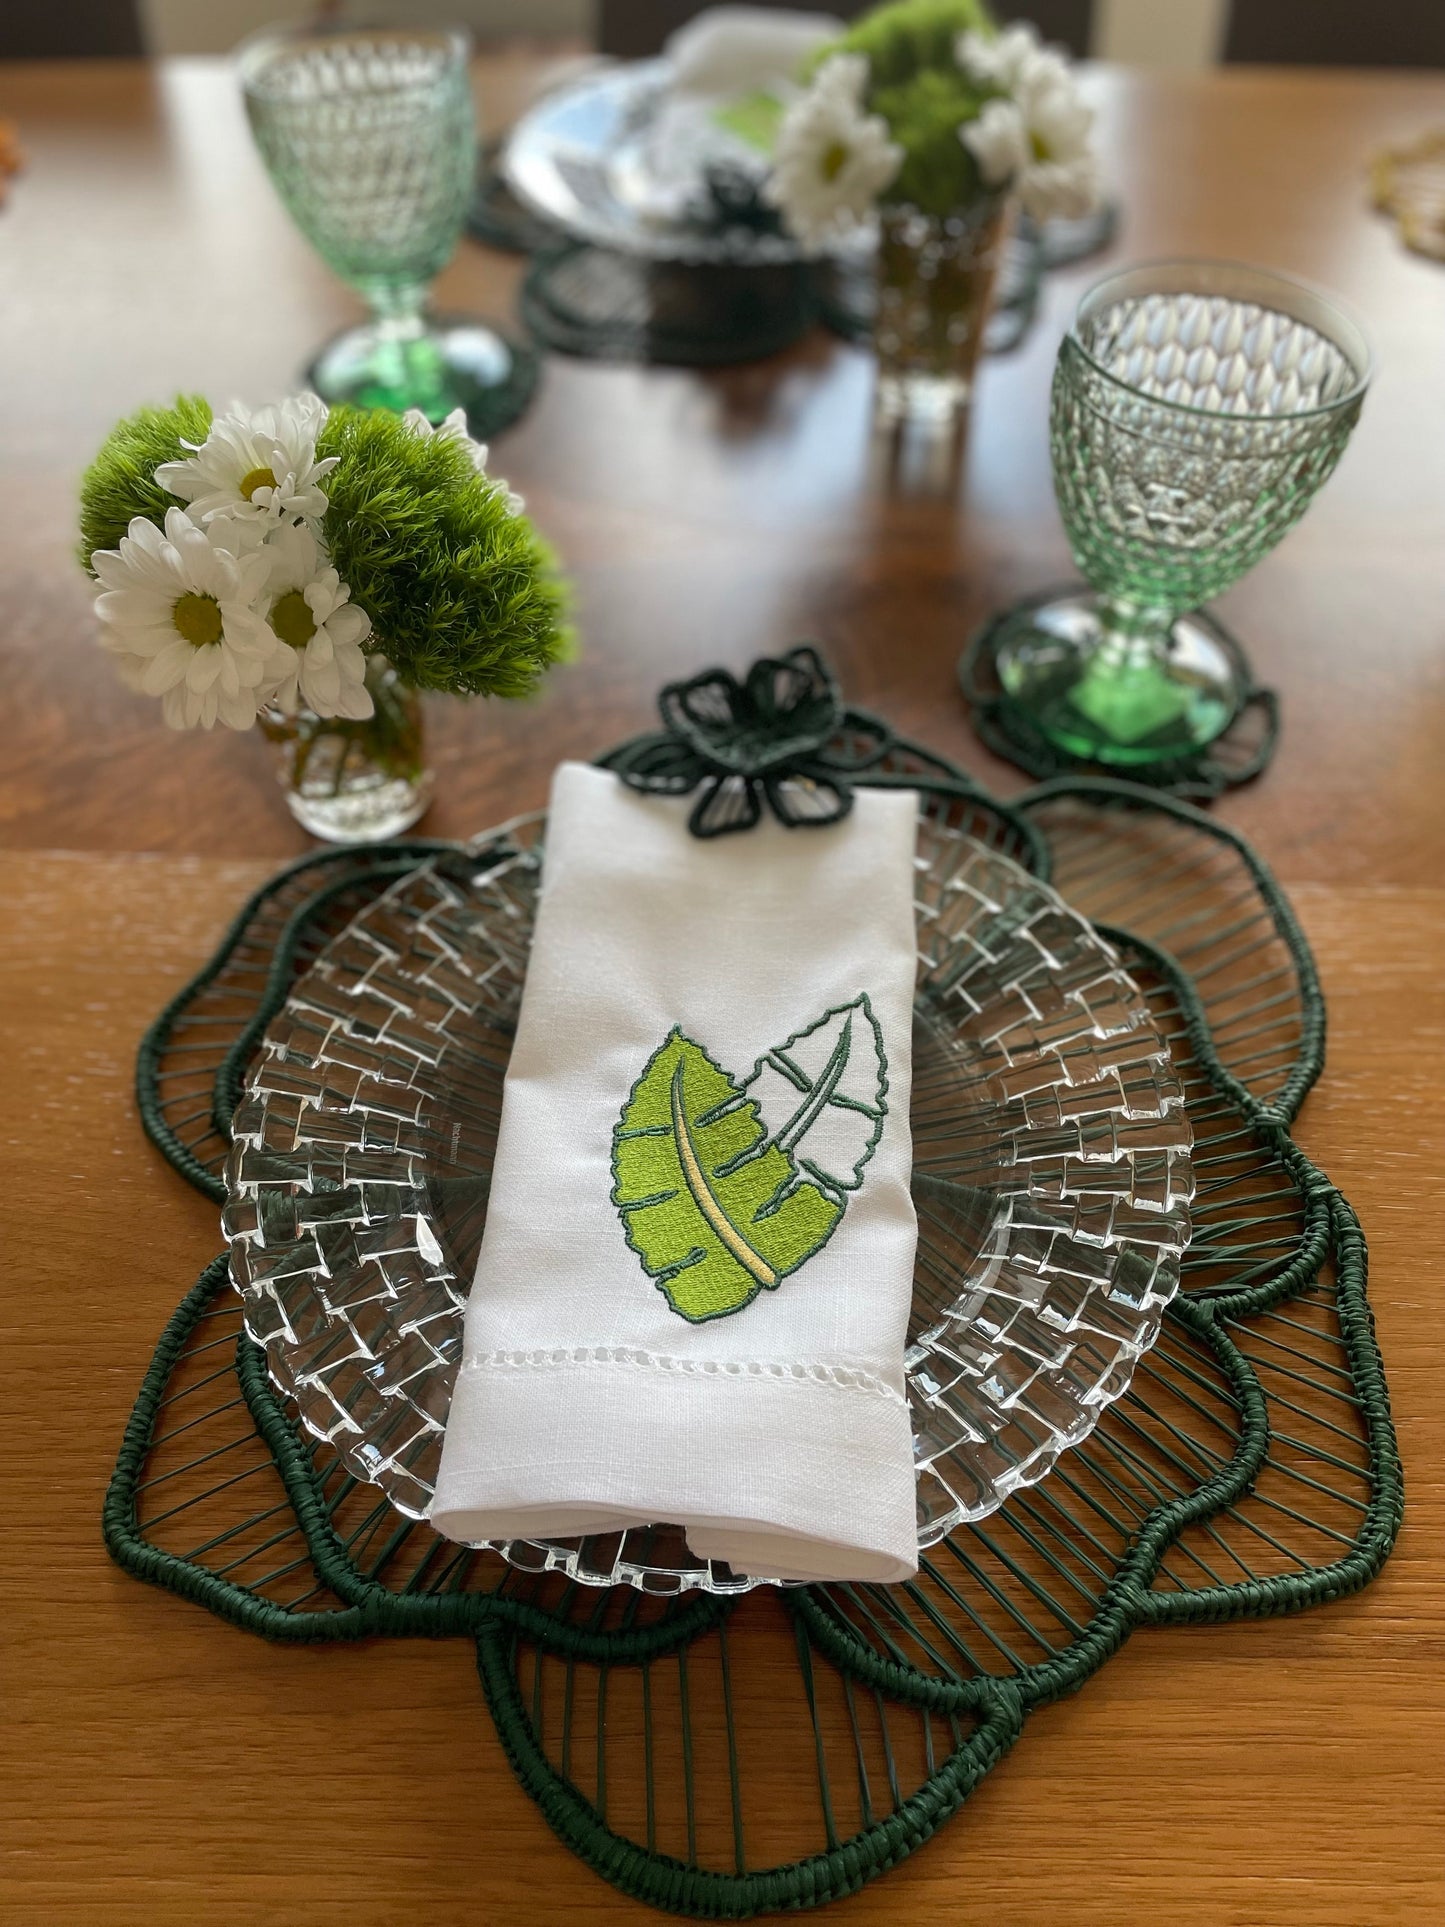 Artisan Green Flower Napkin Ring